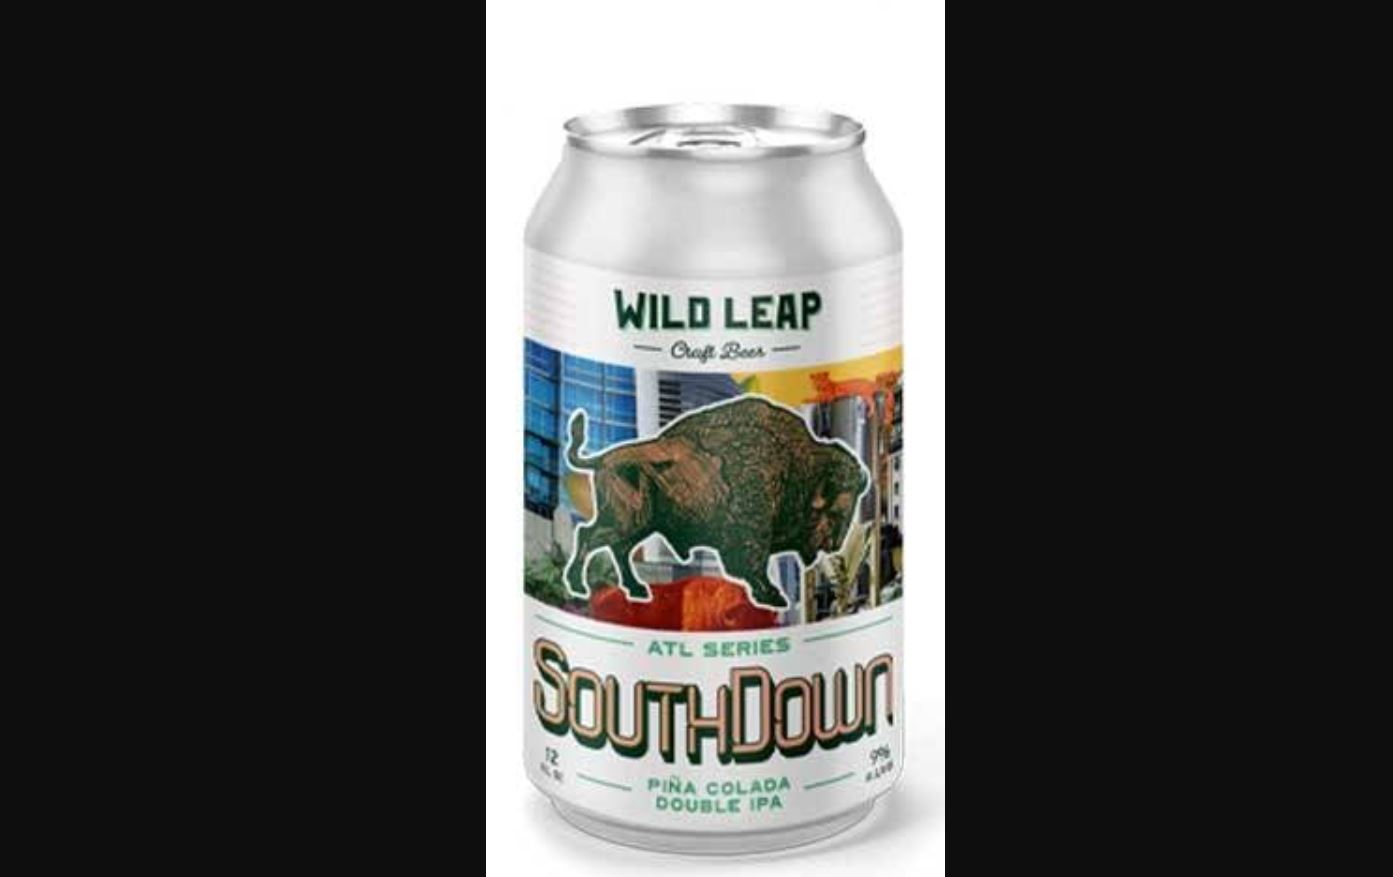 Wild Leap SouthDown